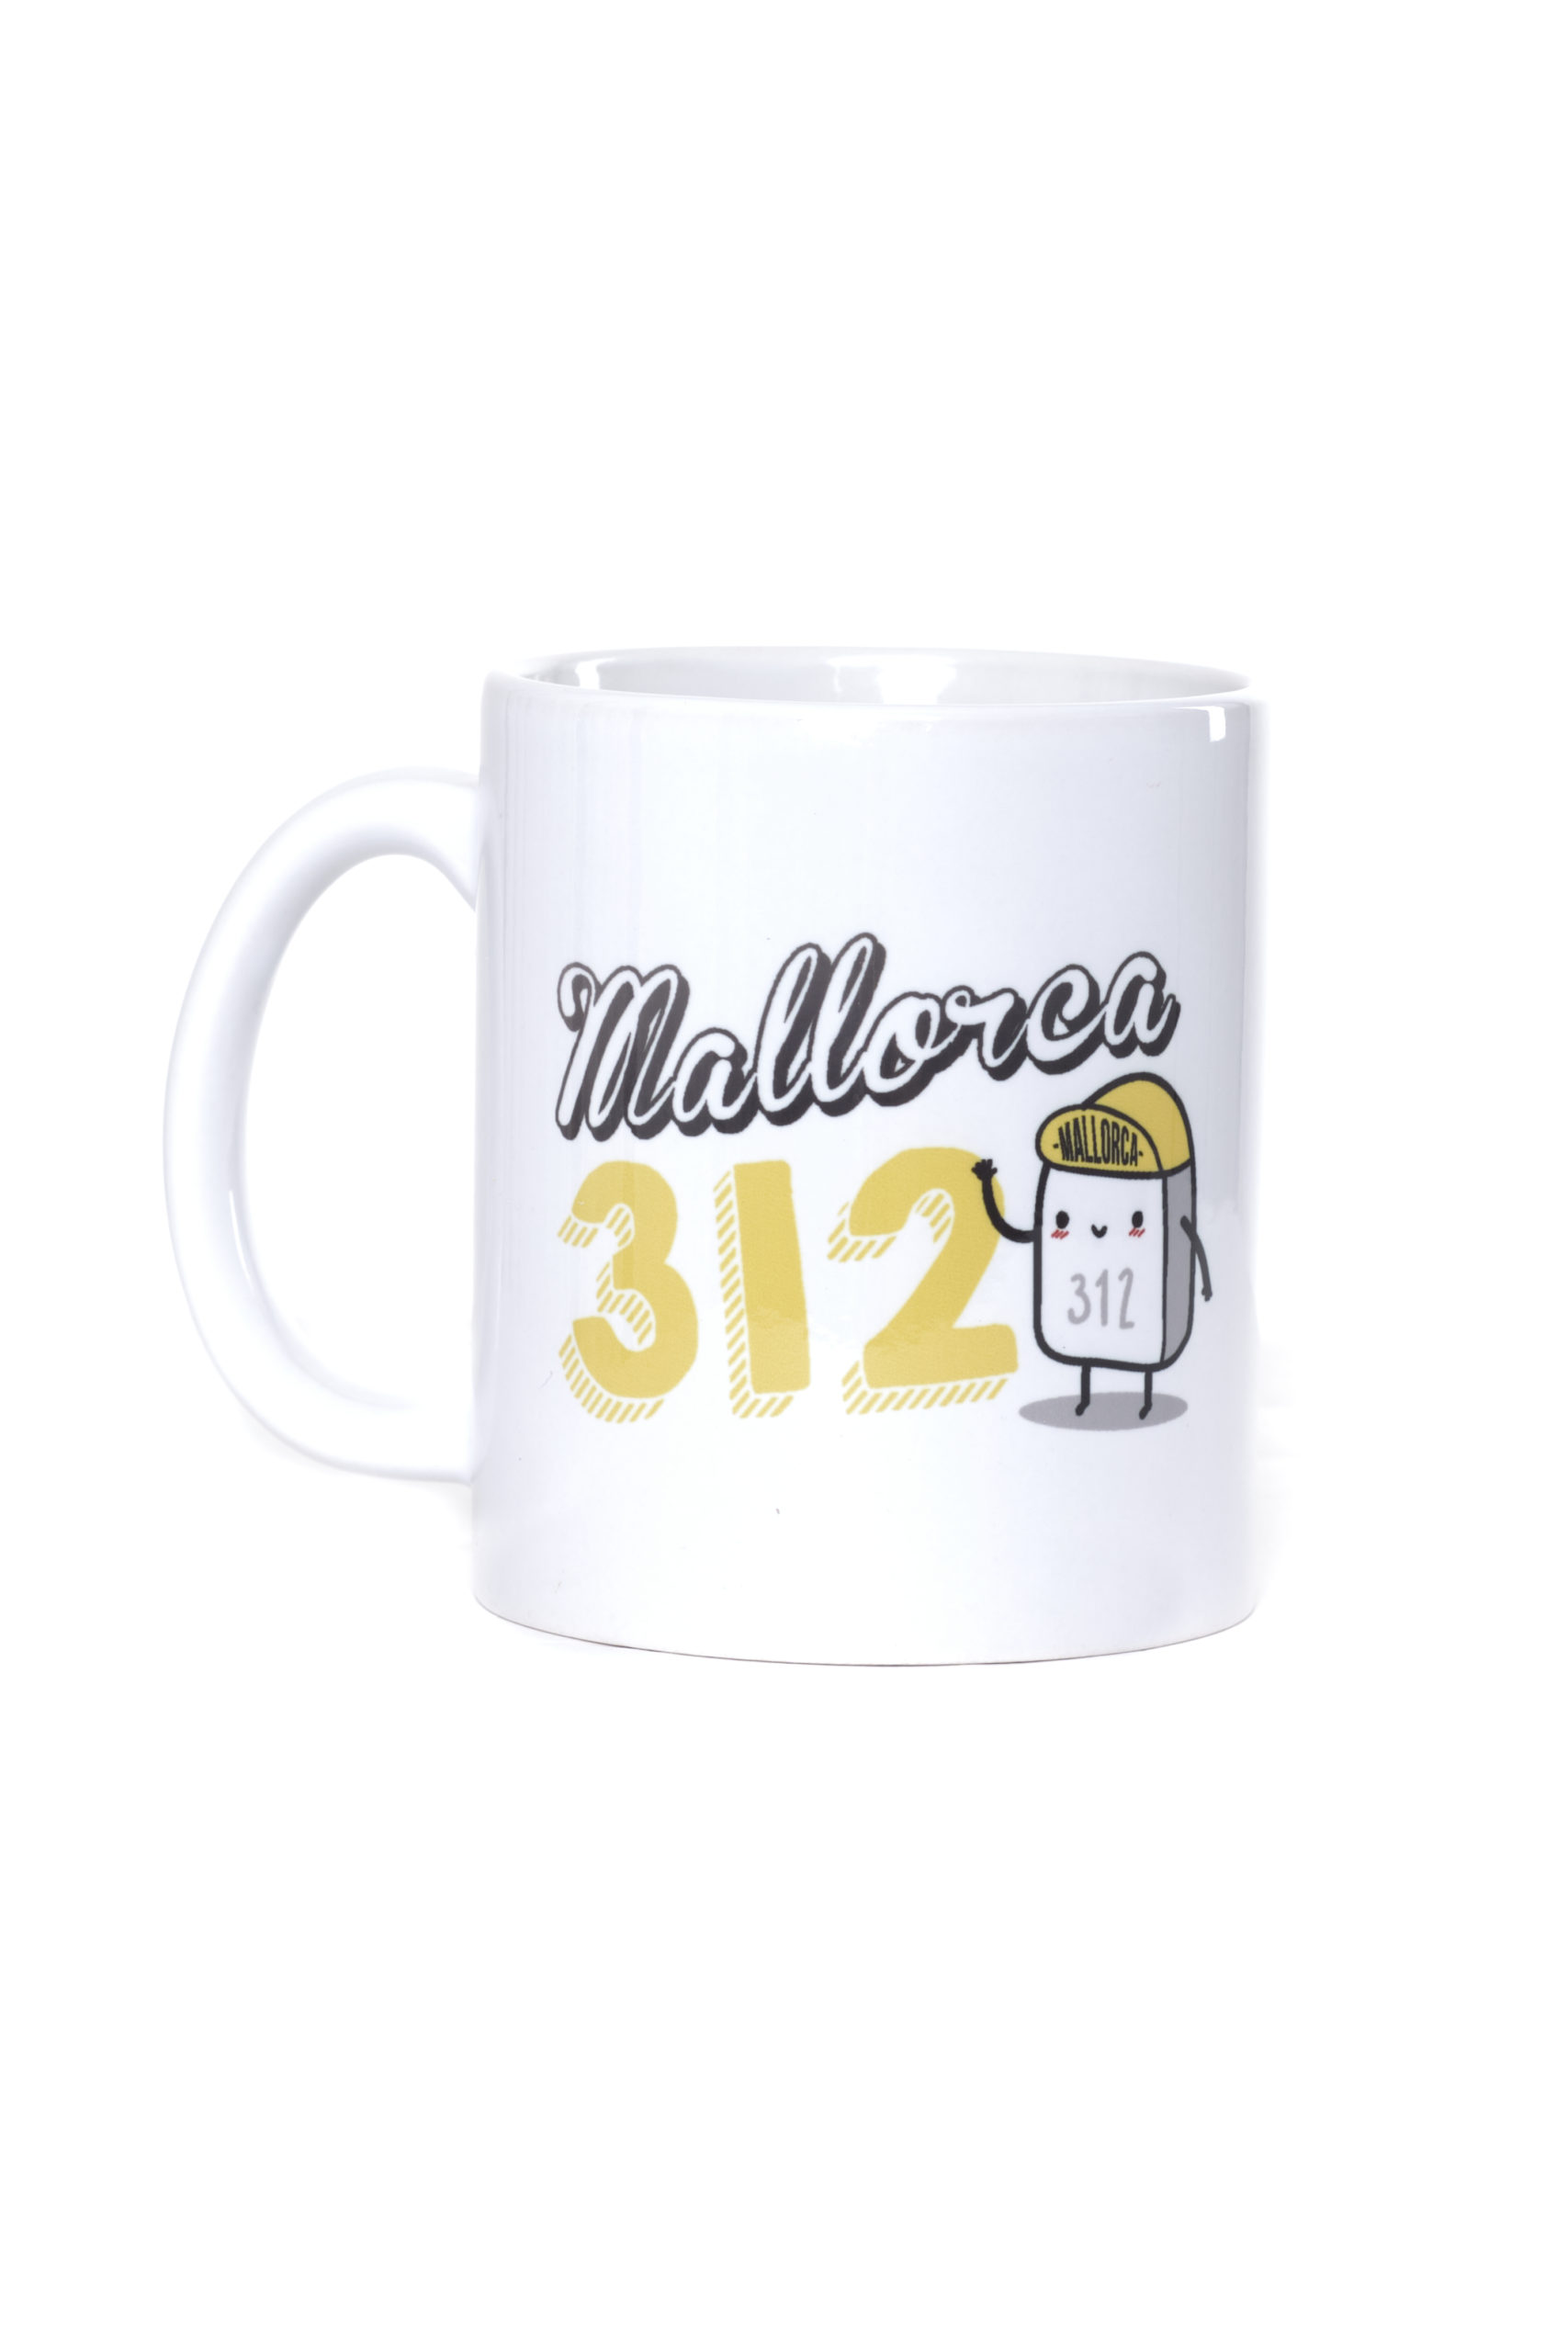 Mallorca 312 mug